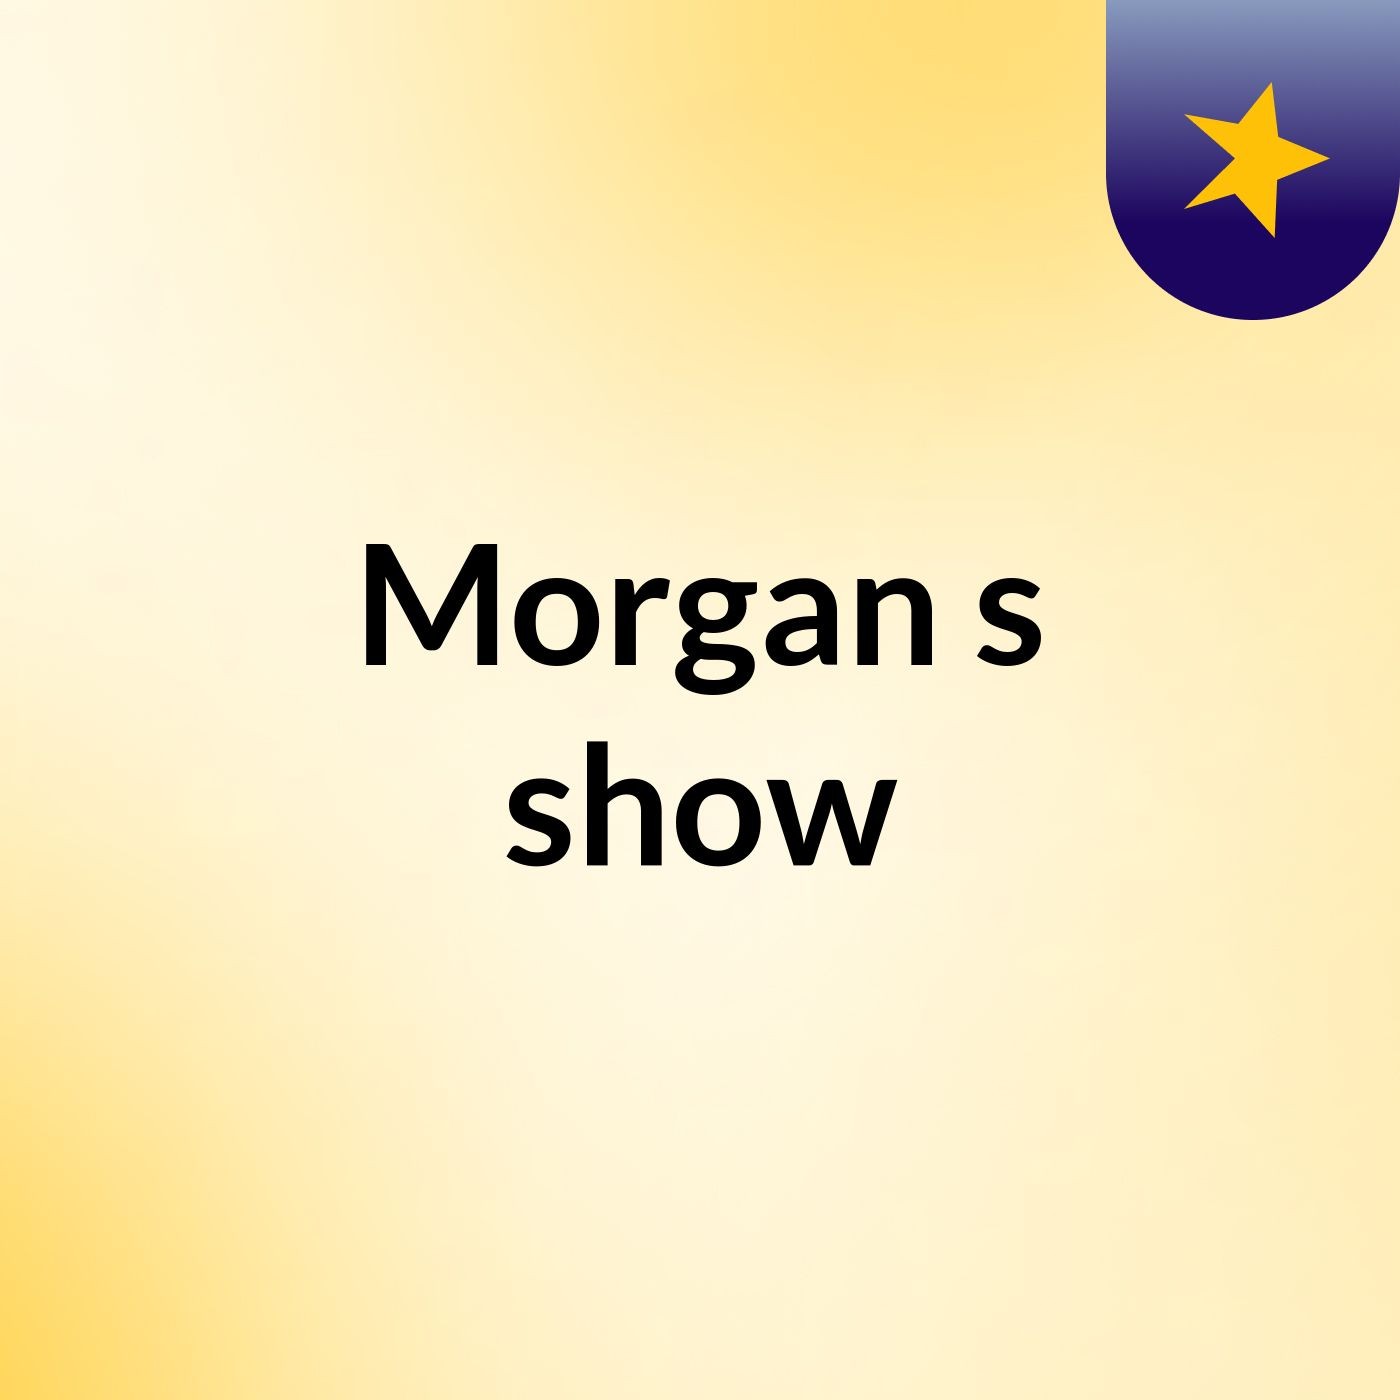 Morgan's show